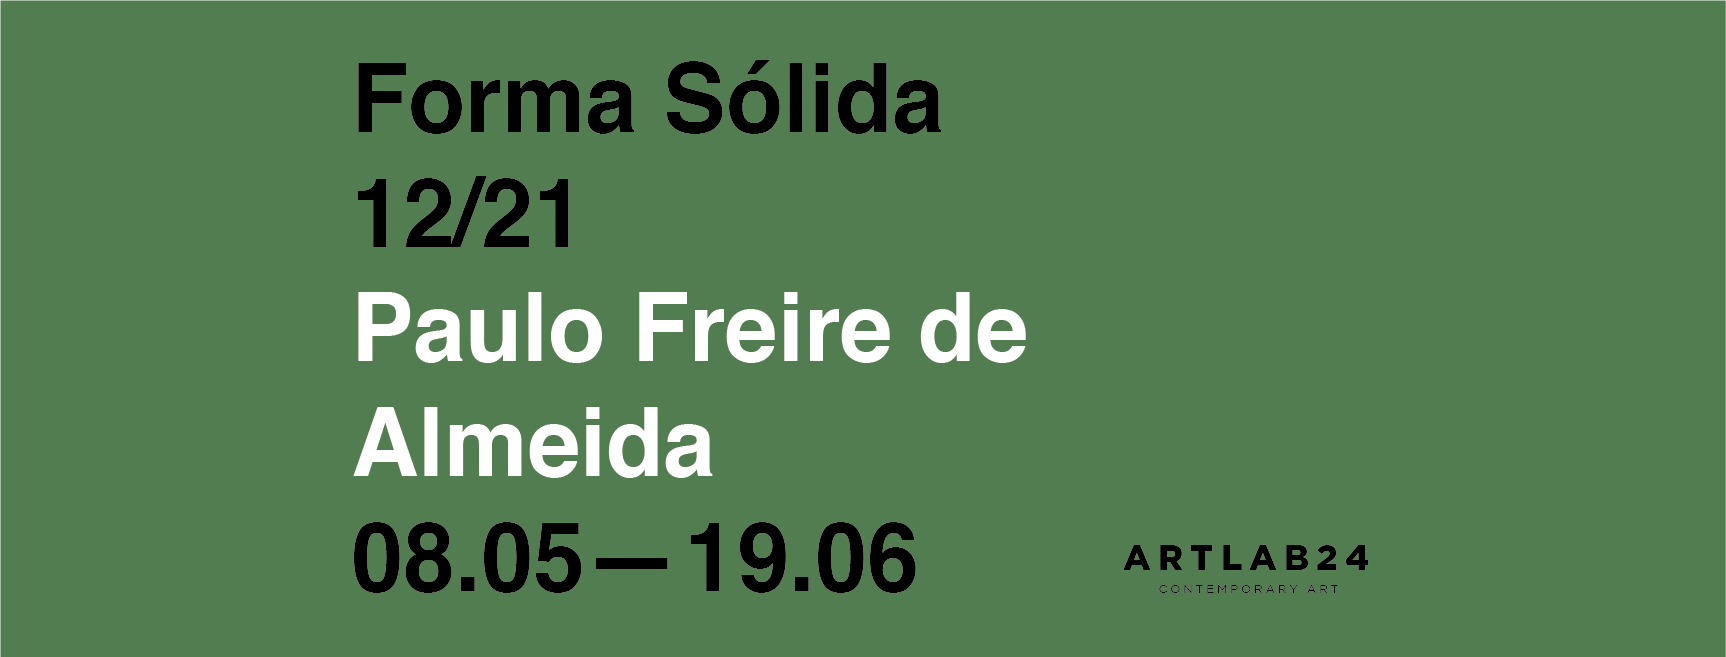 Forma Sólida 12/21 de Paulo Freire de Almeida